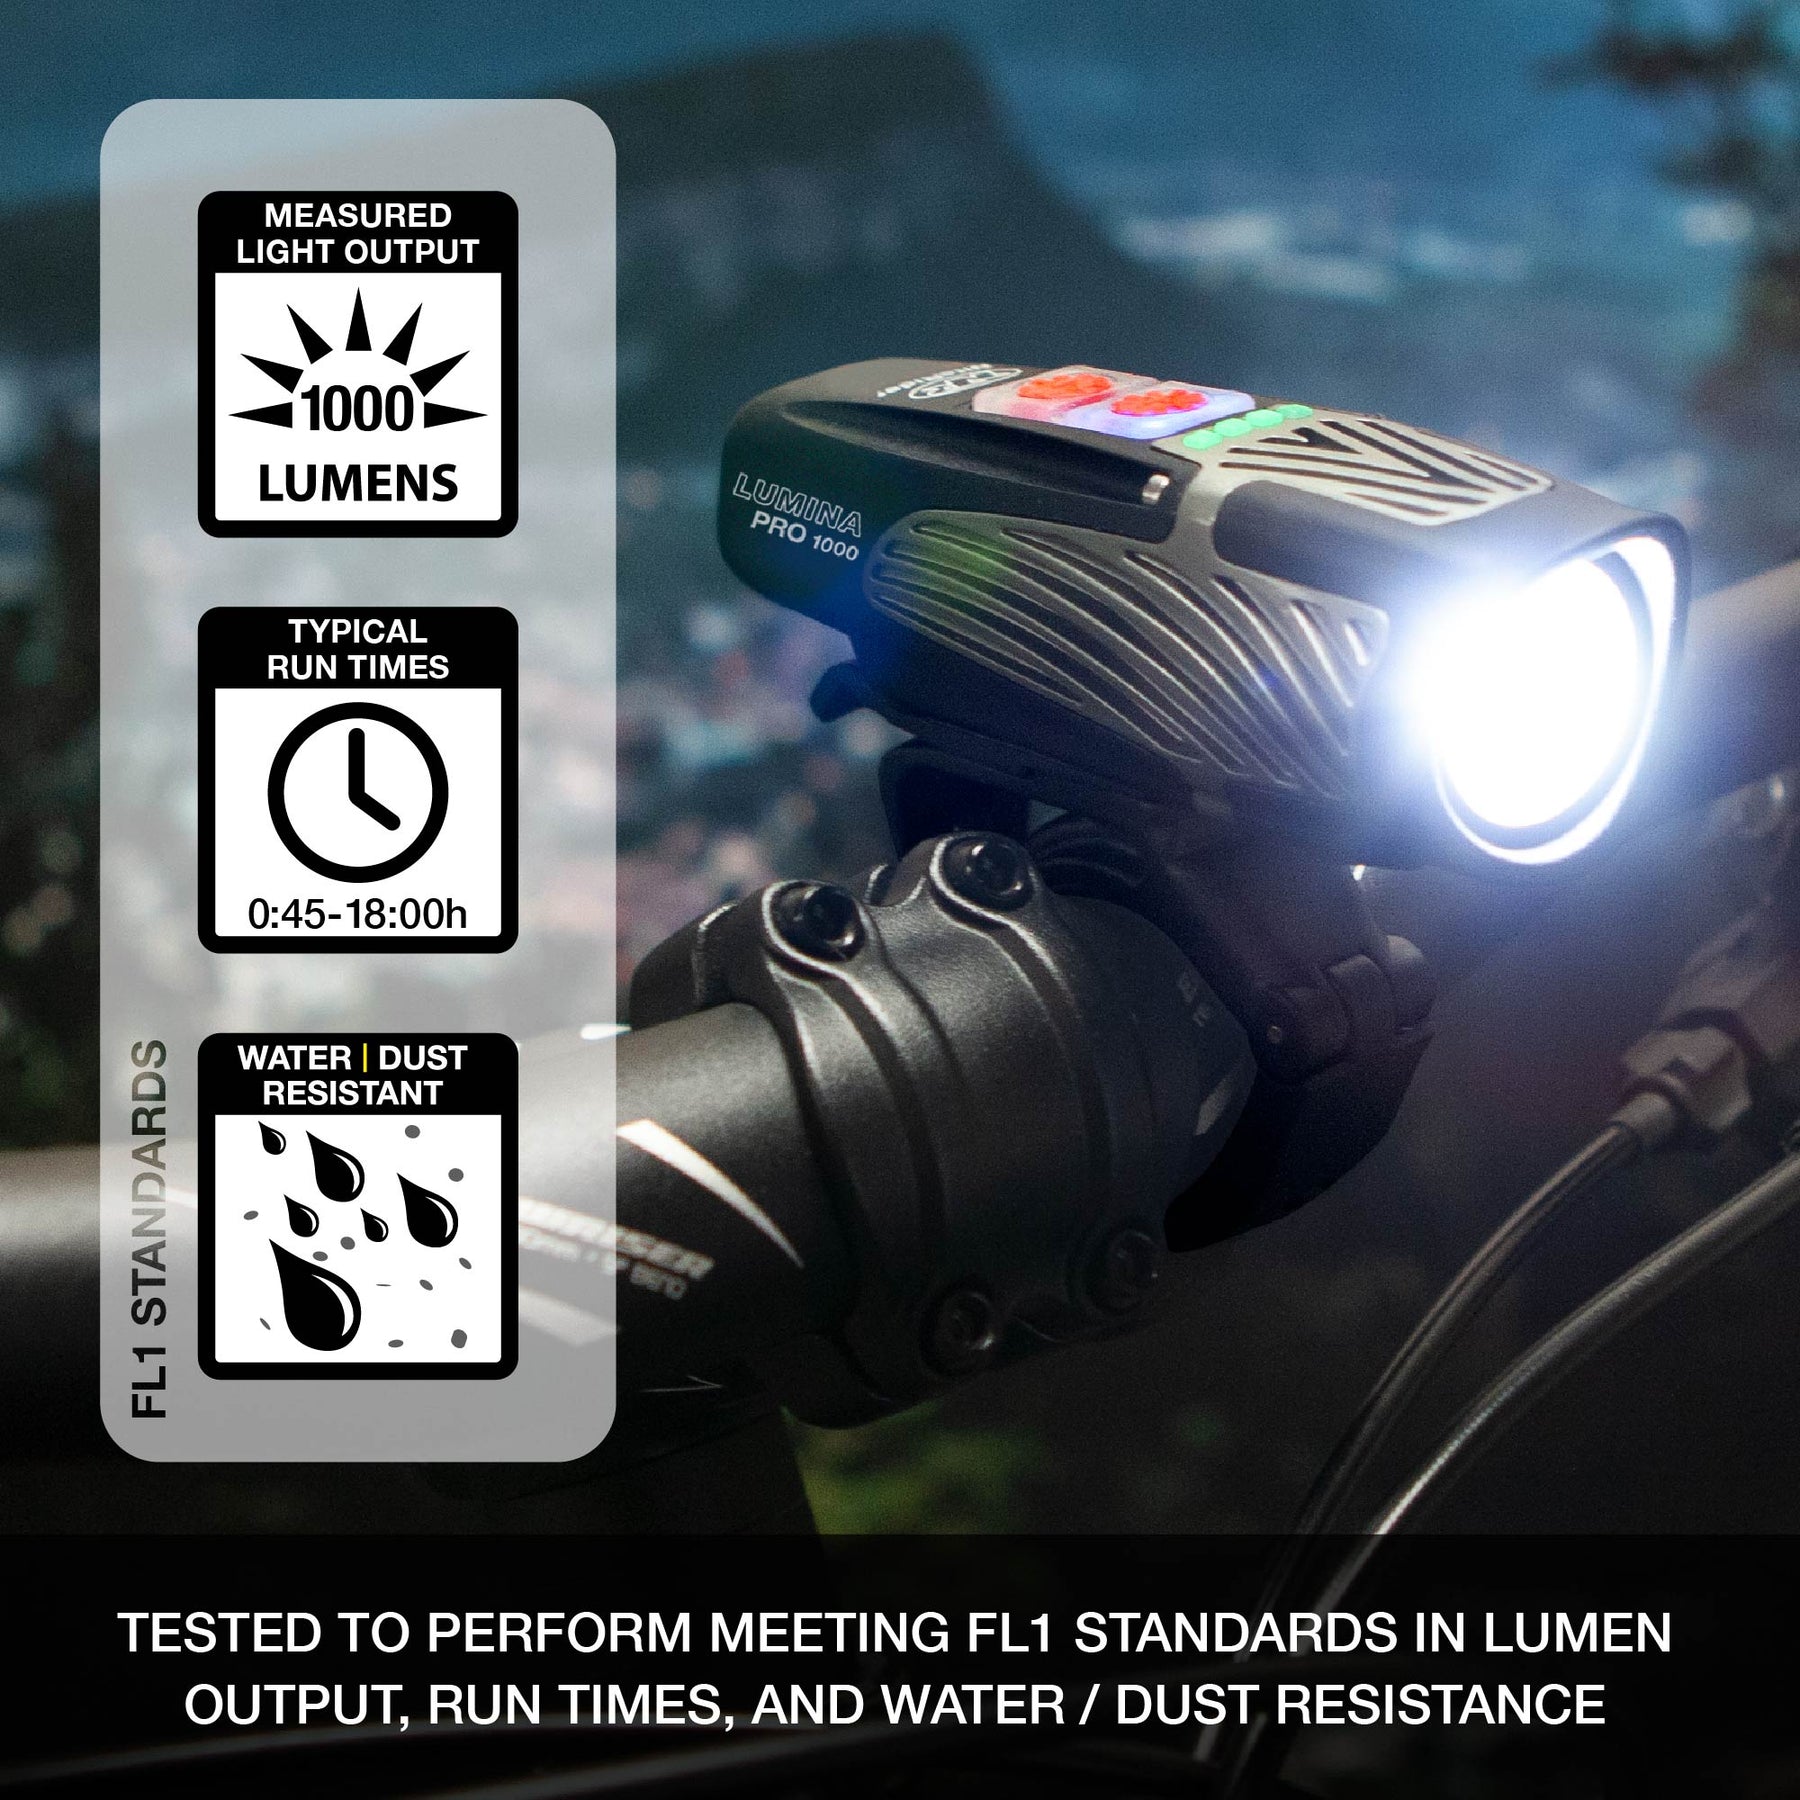 Combo de luces NITE RIDER Lumina™ Pro 1000 and Vmax+™ 150